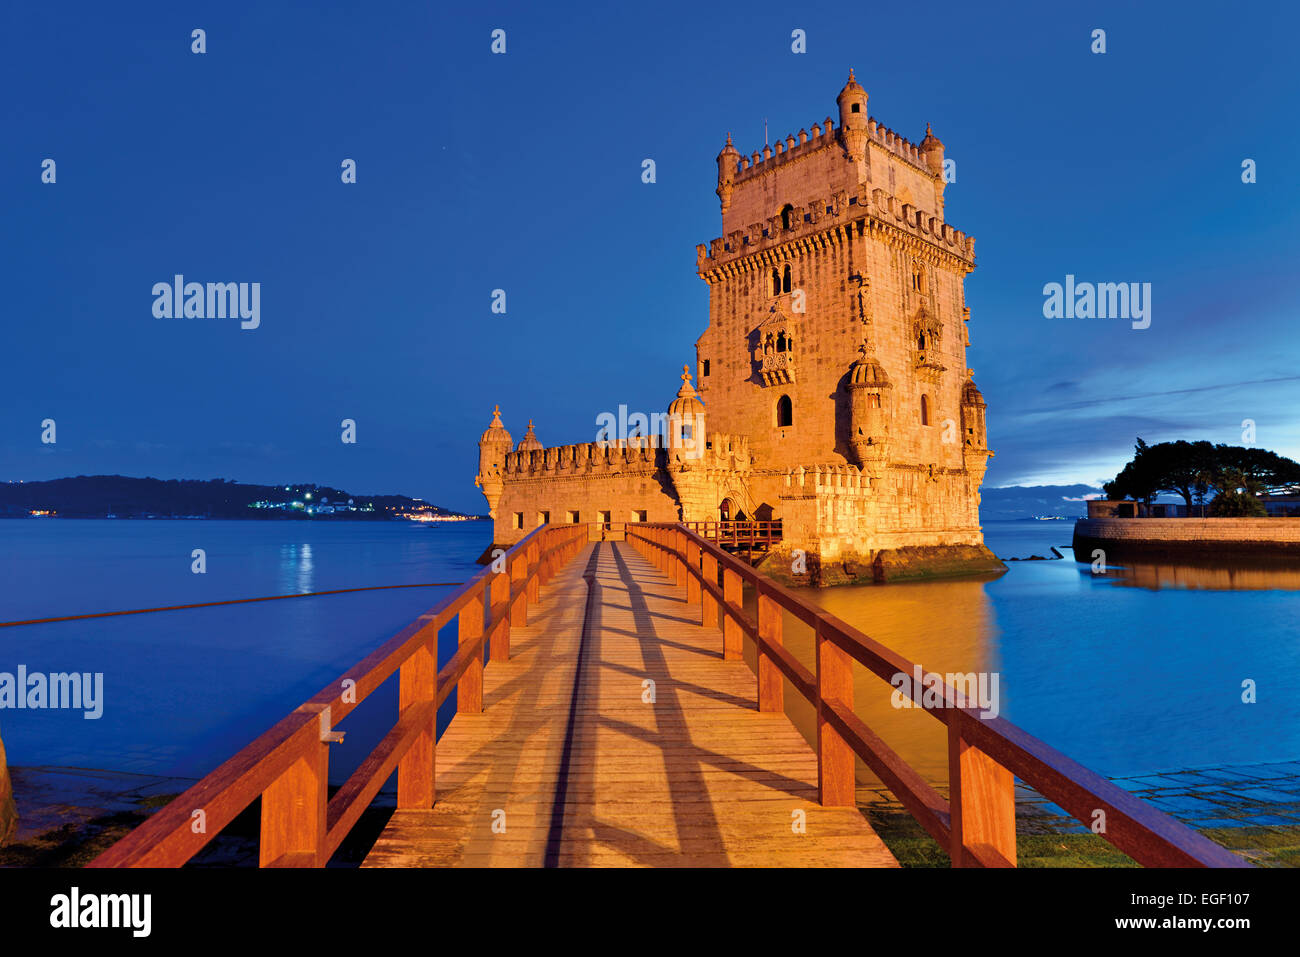 Portugal, Lisbonne : UNESCO World Heritage Site " Torre de Belém' au crépuscule Banque D'Images